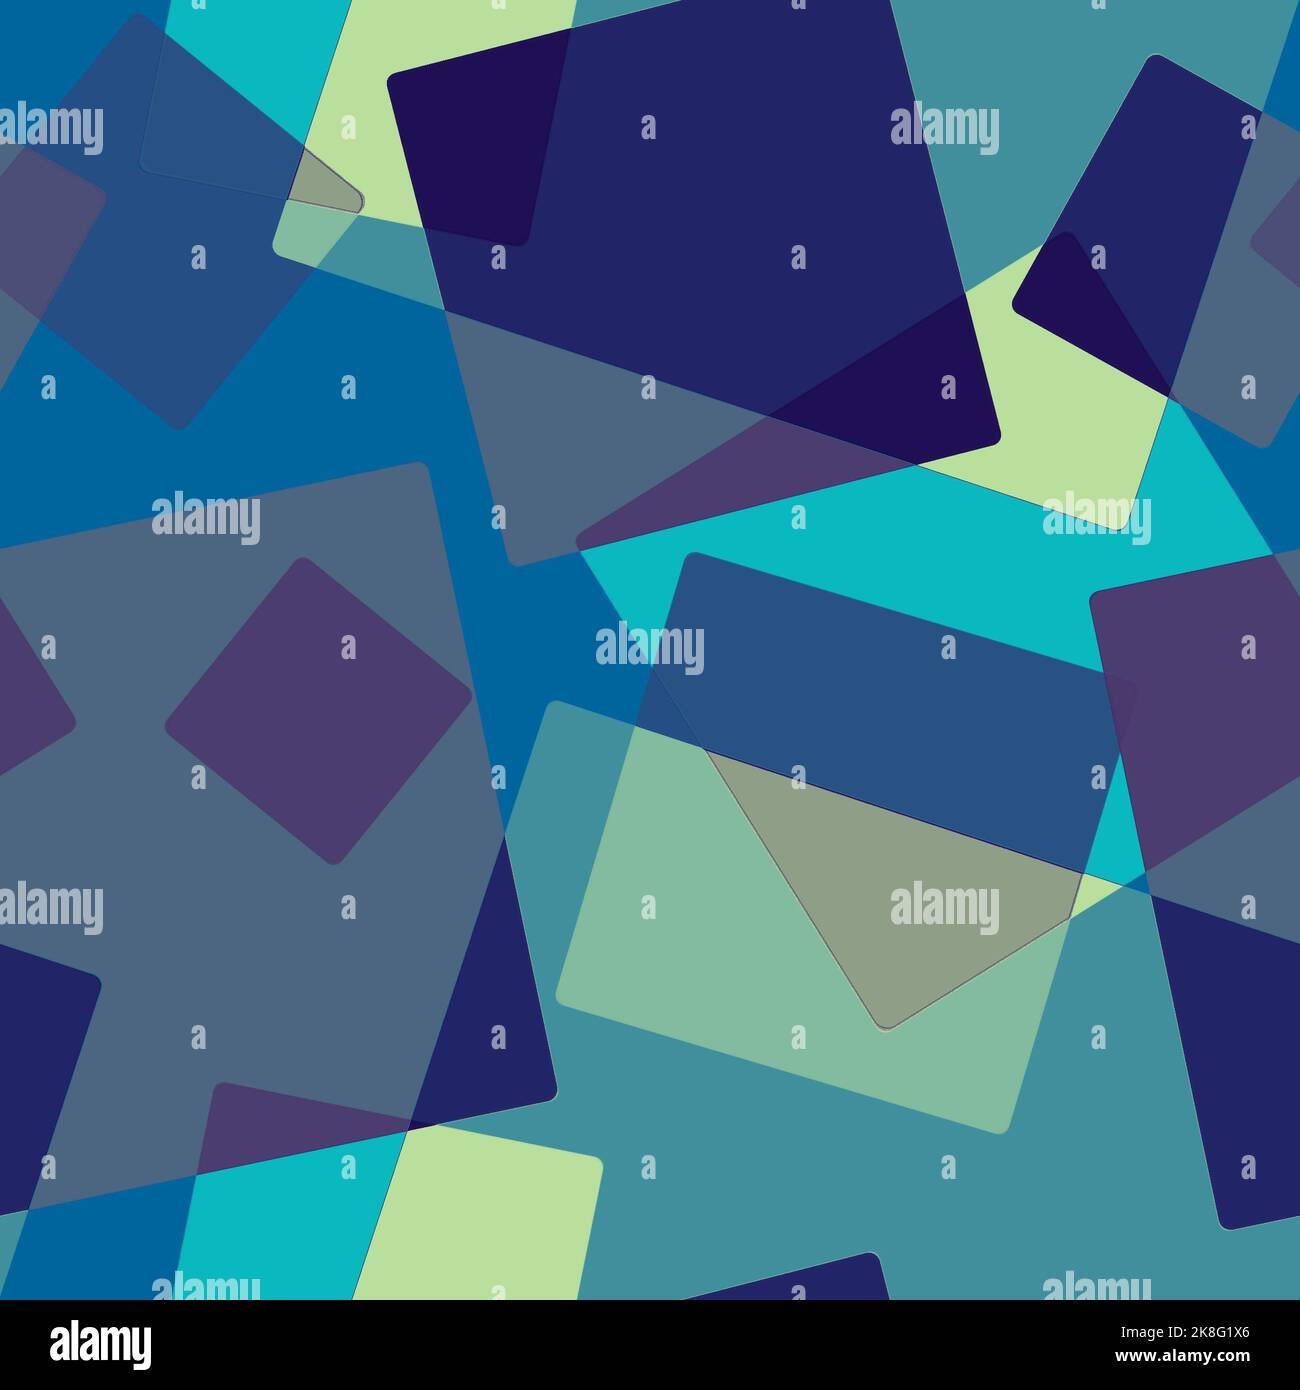 Pattern astratto senza giunture di rettangoli trasparenti sovrapposti disposti casualmente, quadrati di toni blu su sfondo mottley.Layering effect.for fishi Foto Stock